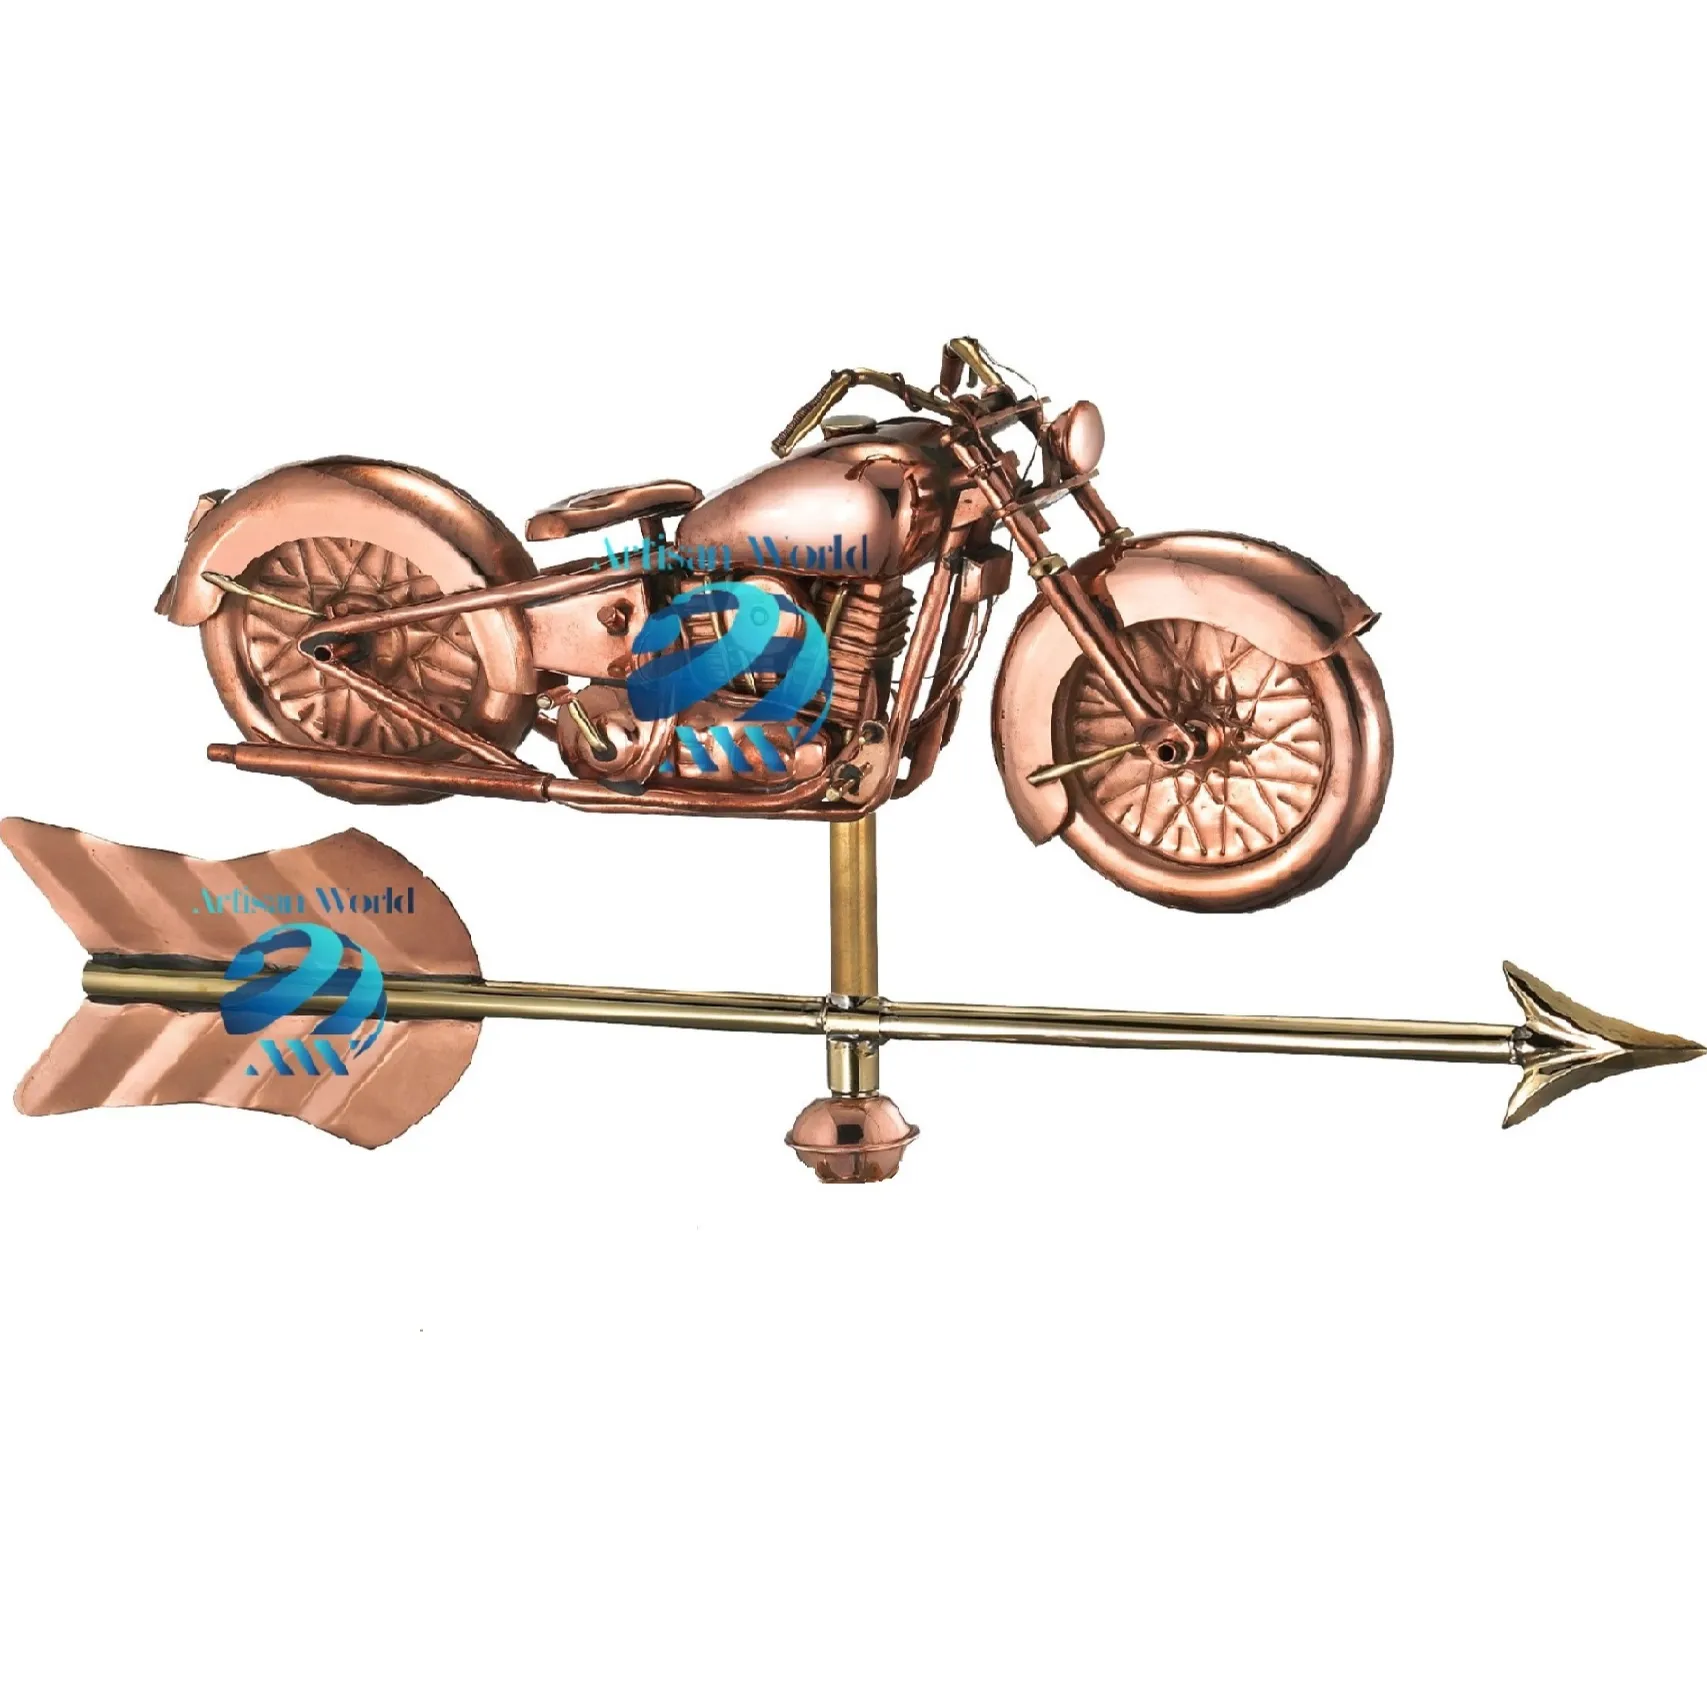 アローコテージの風見鶏が付いているビンテージオートバイはあなたの屋上の庭を作るために確実に目を引く会話のスターターになります